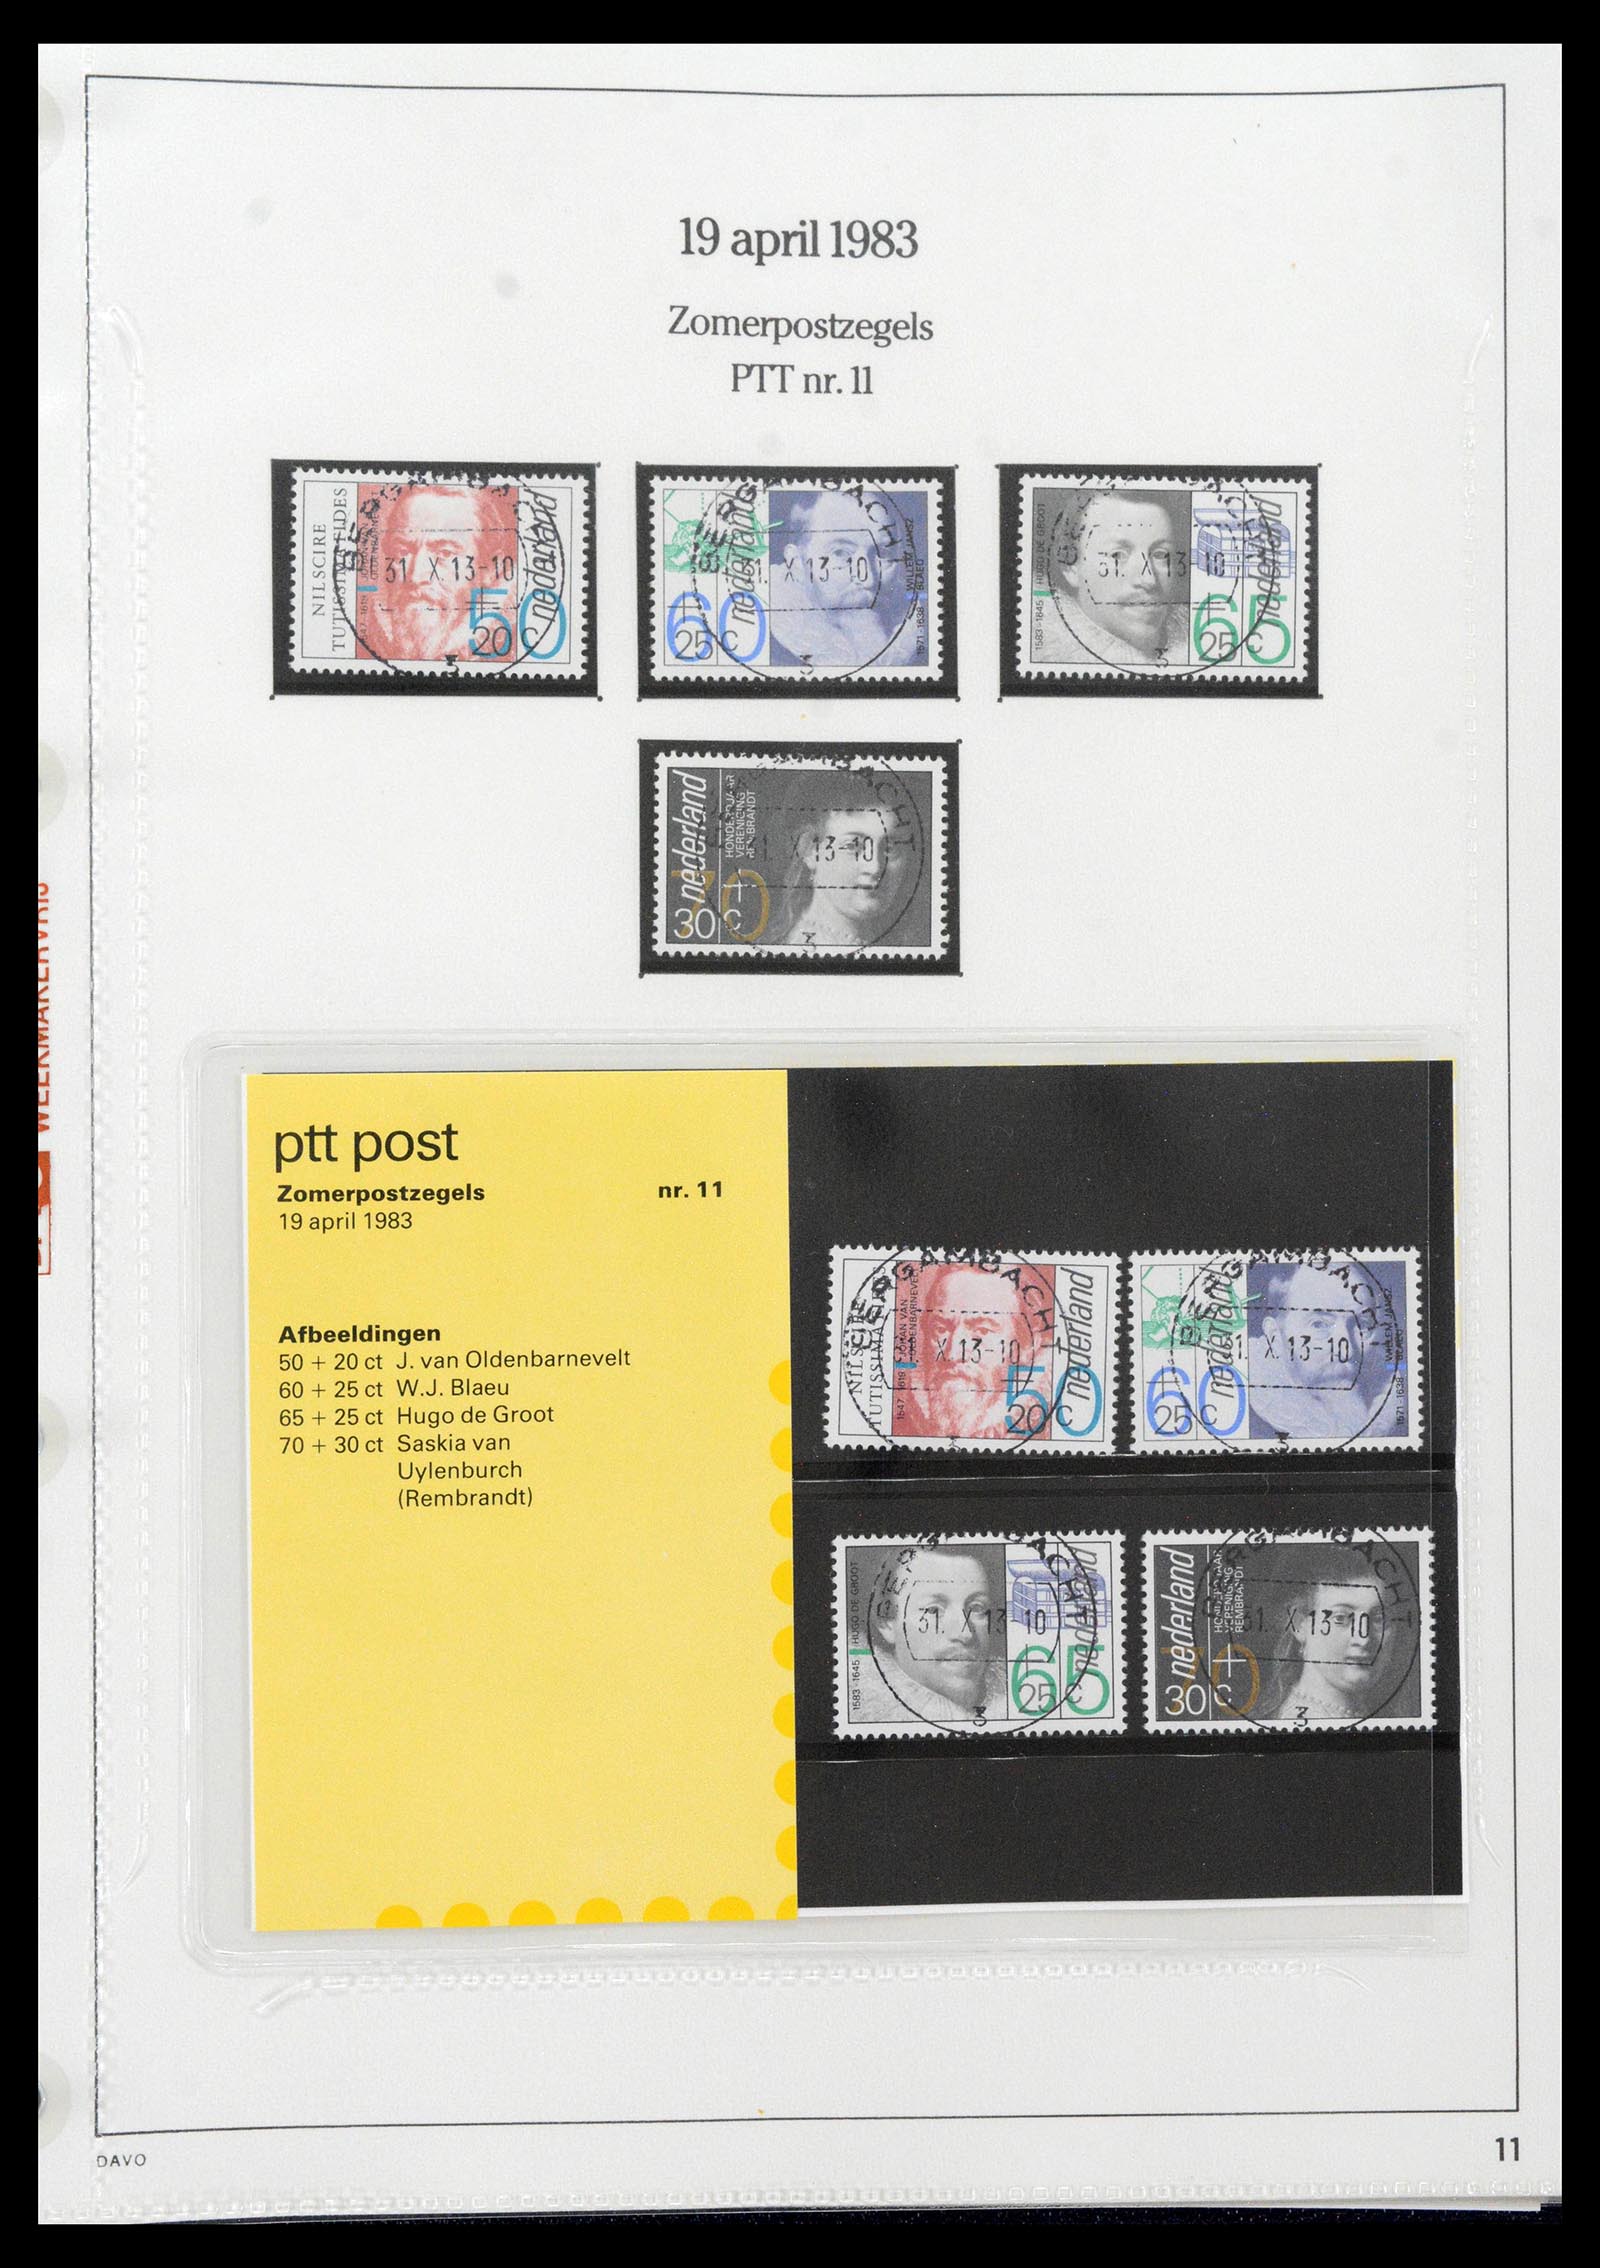 39121 0011 - Stamp collection 39121 Netherlands presentationpacks 1982-2001.